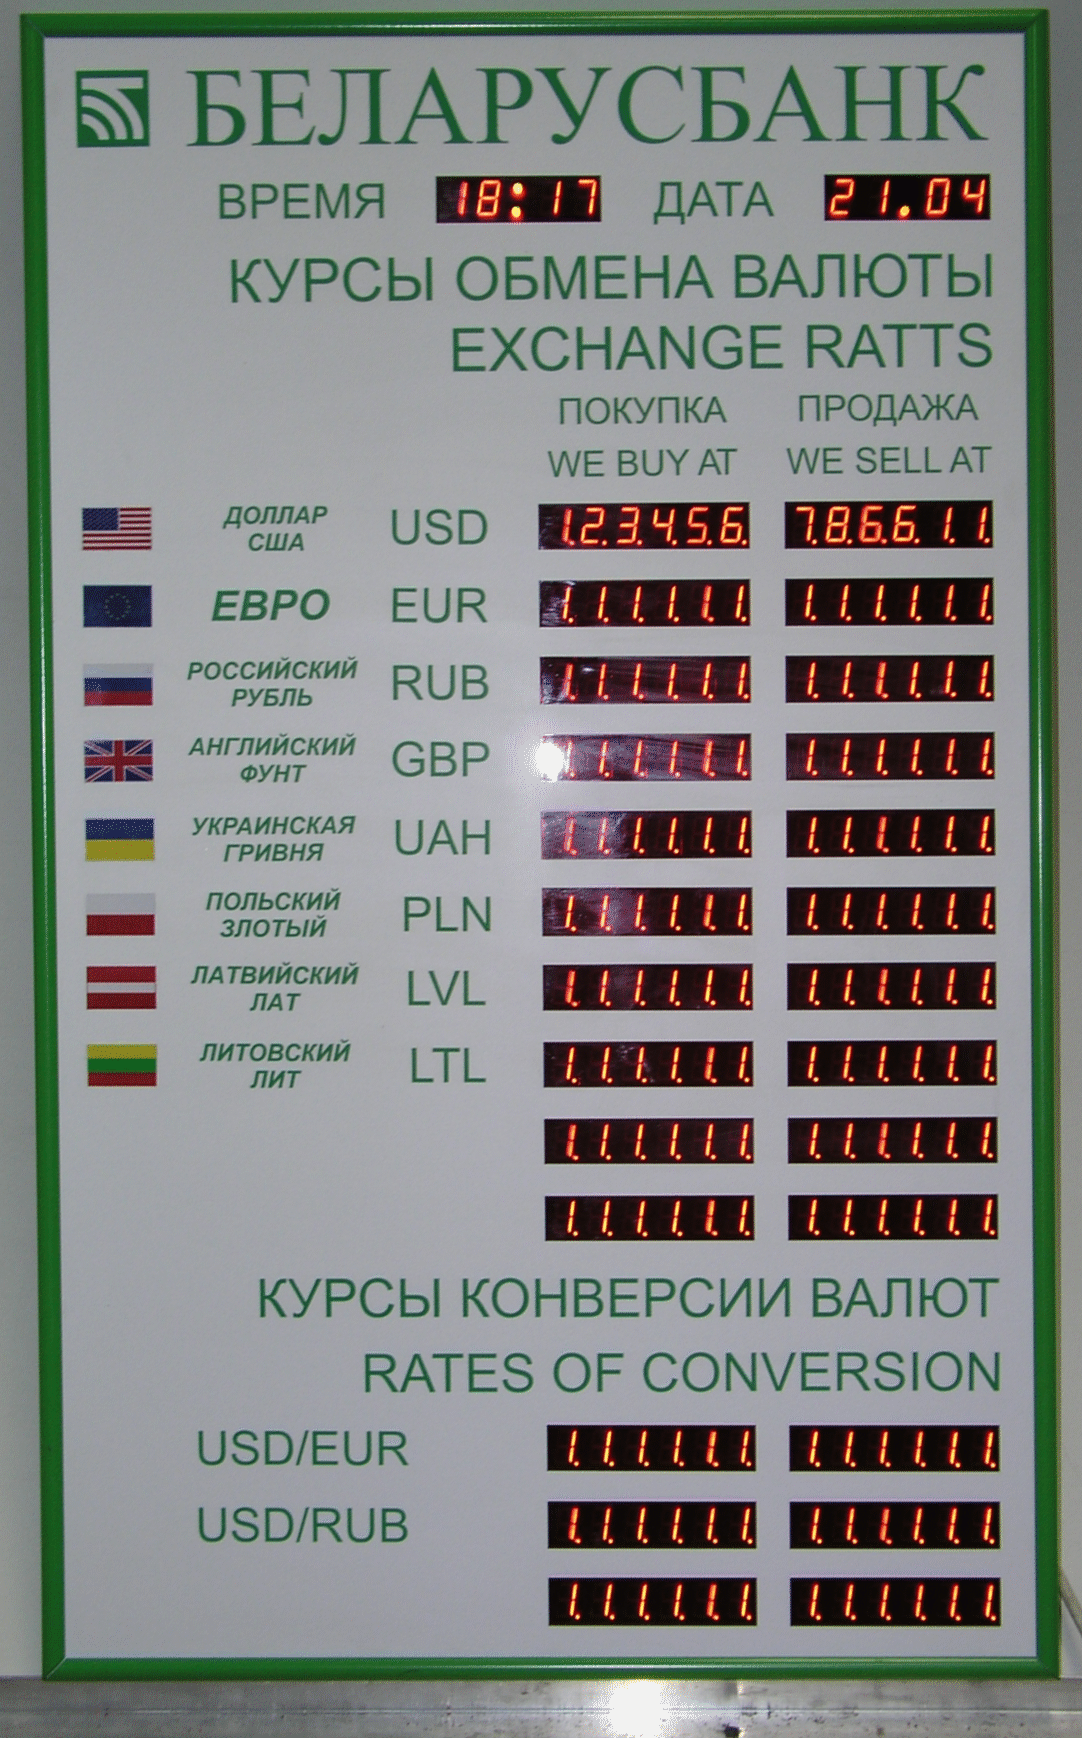 Обмен валюты в беларусбанке на сегодня адрес кошелька биткоин где взять